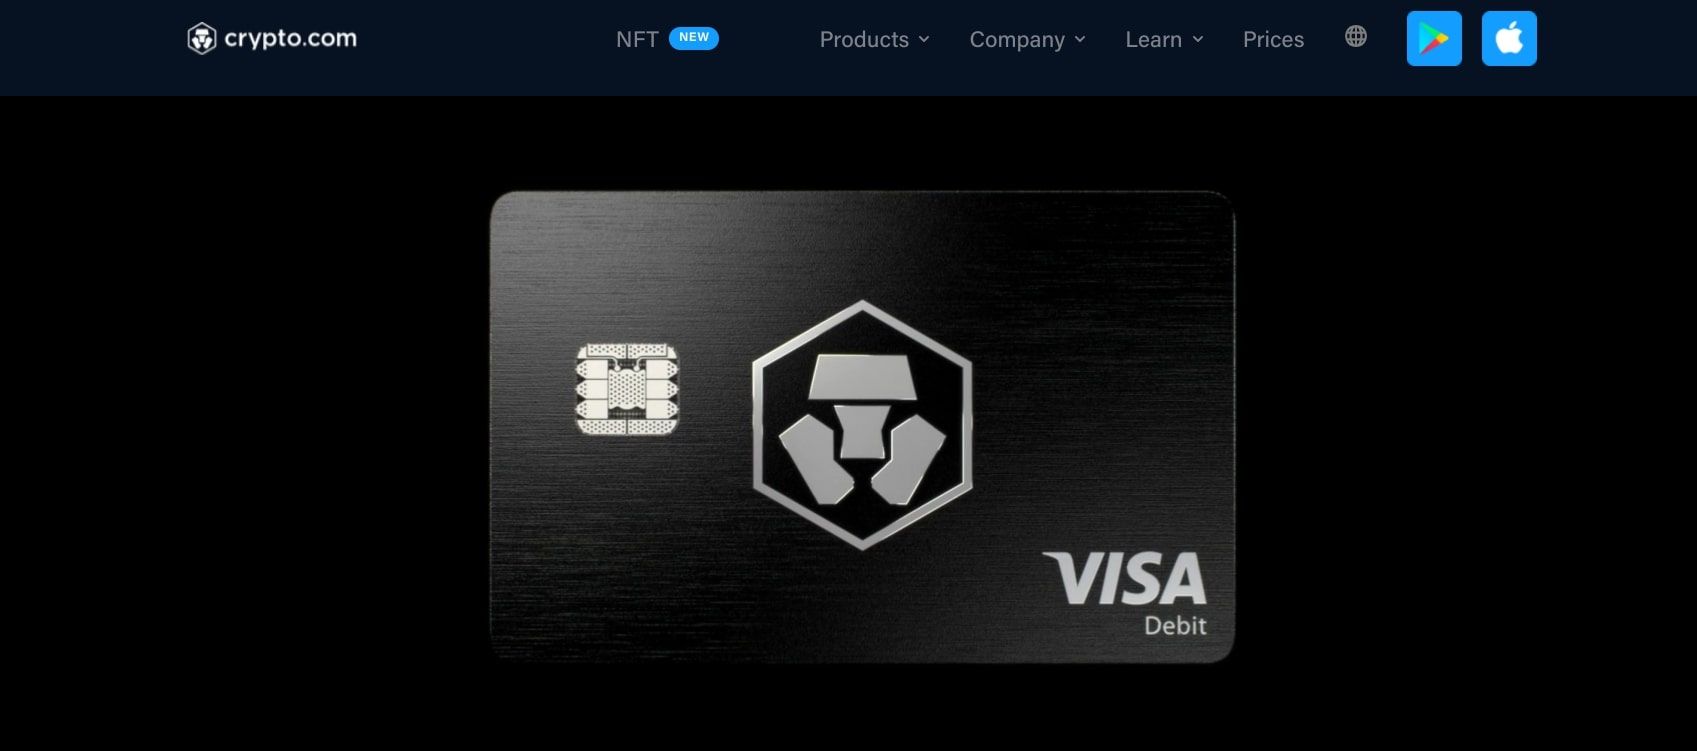 crypto.com visa card webpage screenshot